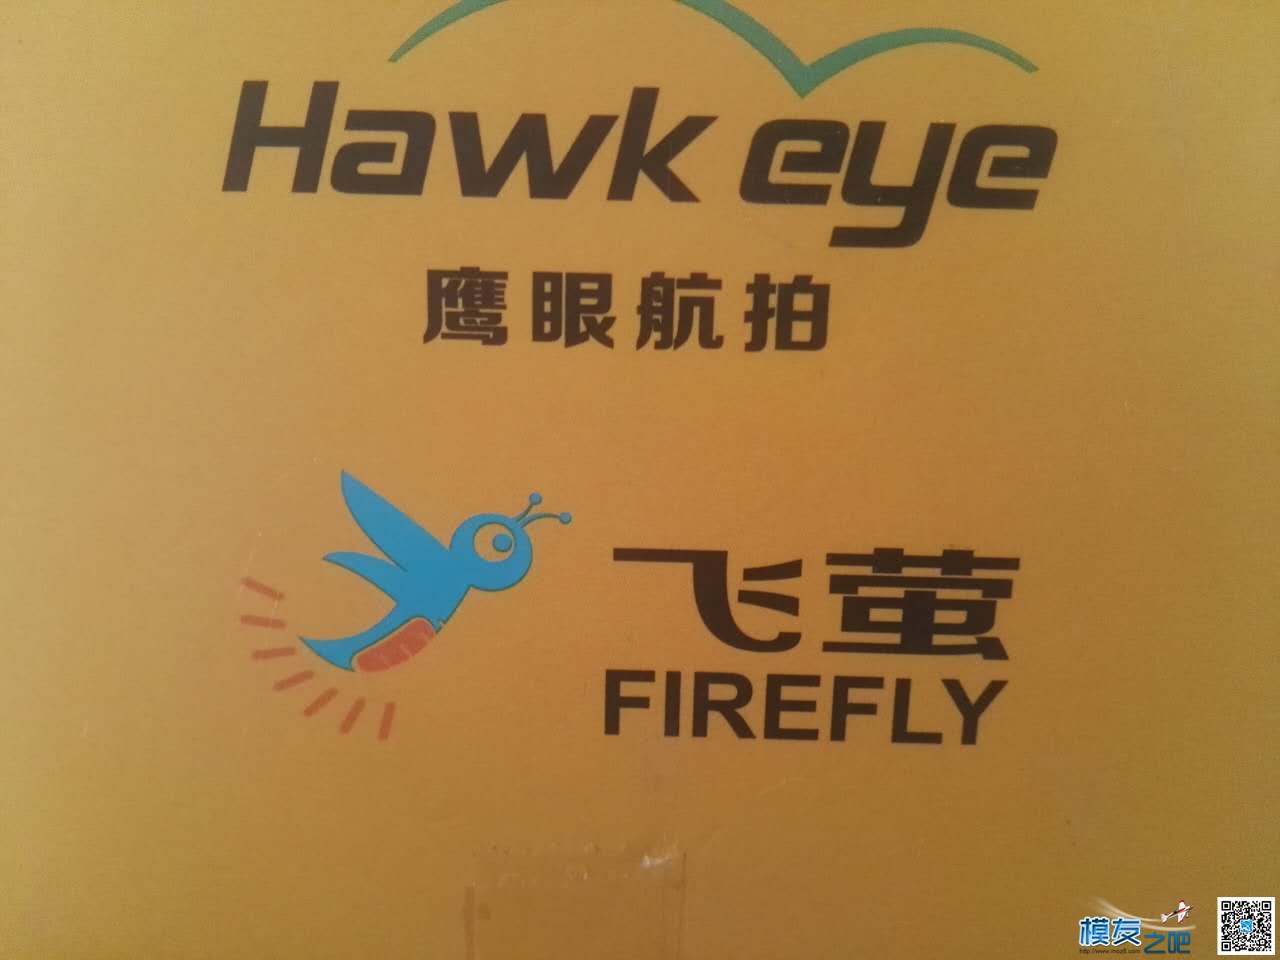 【模友之吧】飞萤 7S 鹰眼 FIREFLY 7S 运动相机 4K送测 会员,相机,产品 作者:飞来峰 1418 